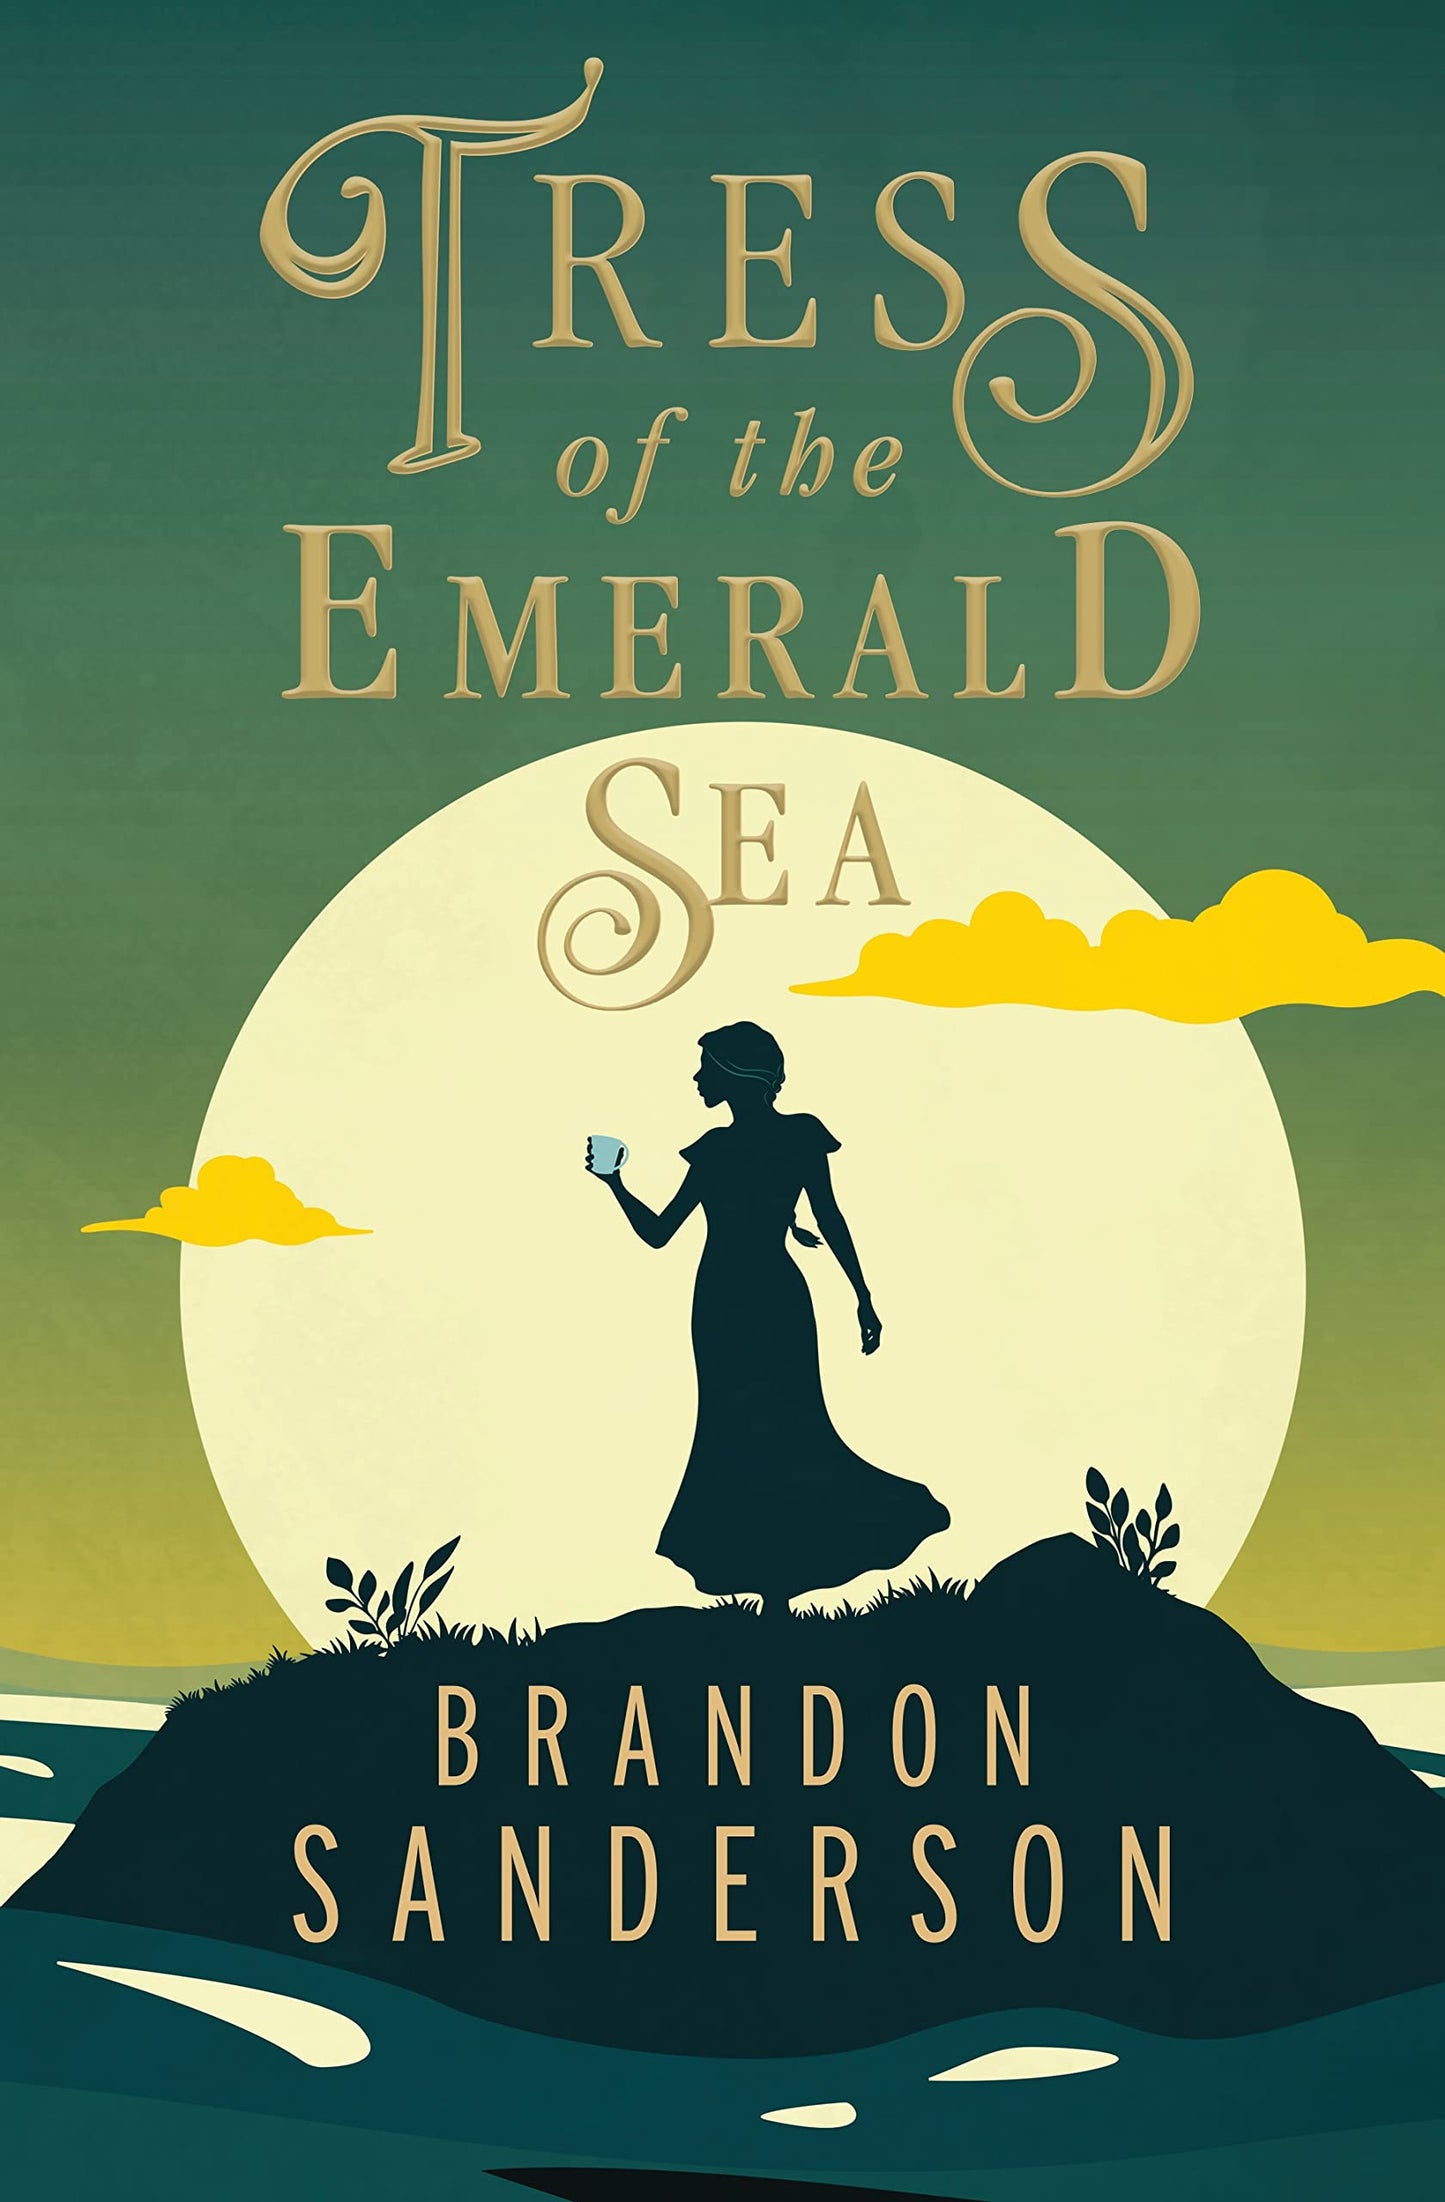 "Tress of the Emerald Sea" by Brandon Sanderson - Dead Tree Dreams Bookstore